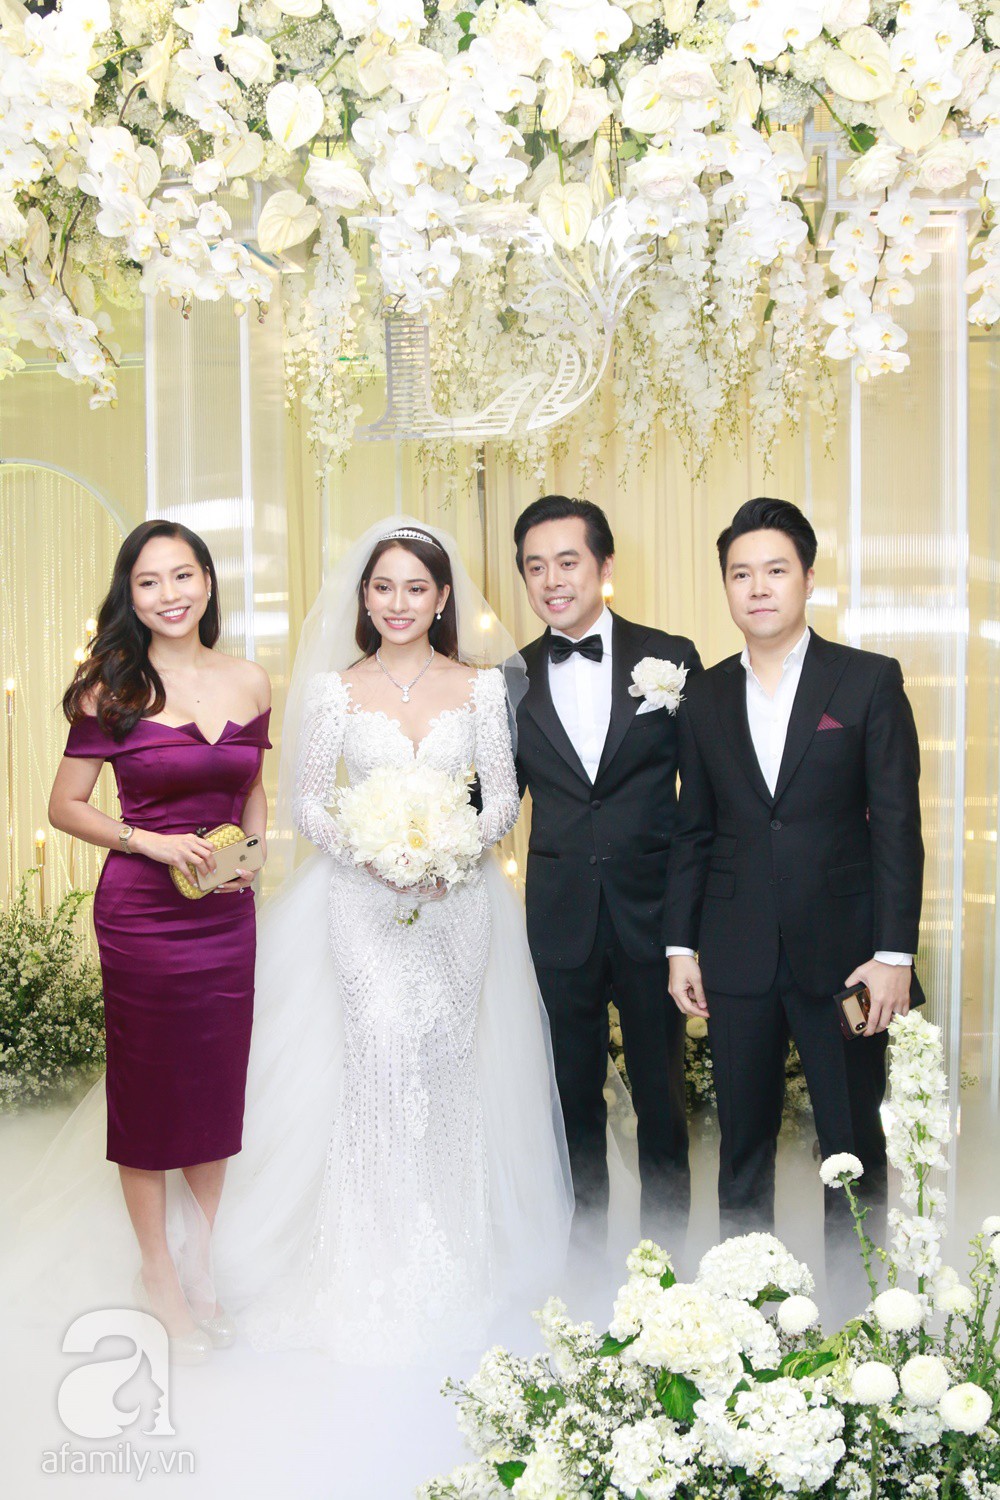 Tiệc cưới chính thức bắt đầu, cô dâu Sara Lưu âu yếm lau nhẹ vết son của mình trên môi chú rể Dương Khắc Linh-22